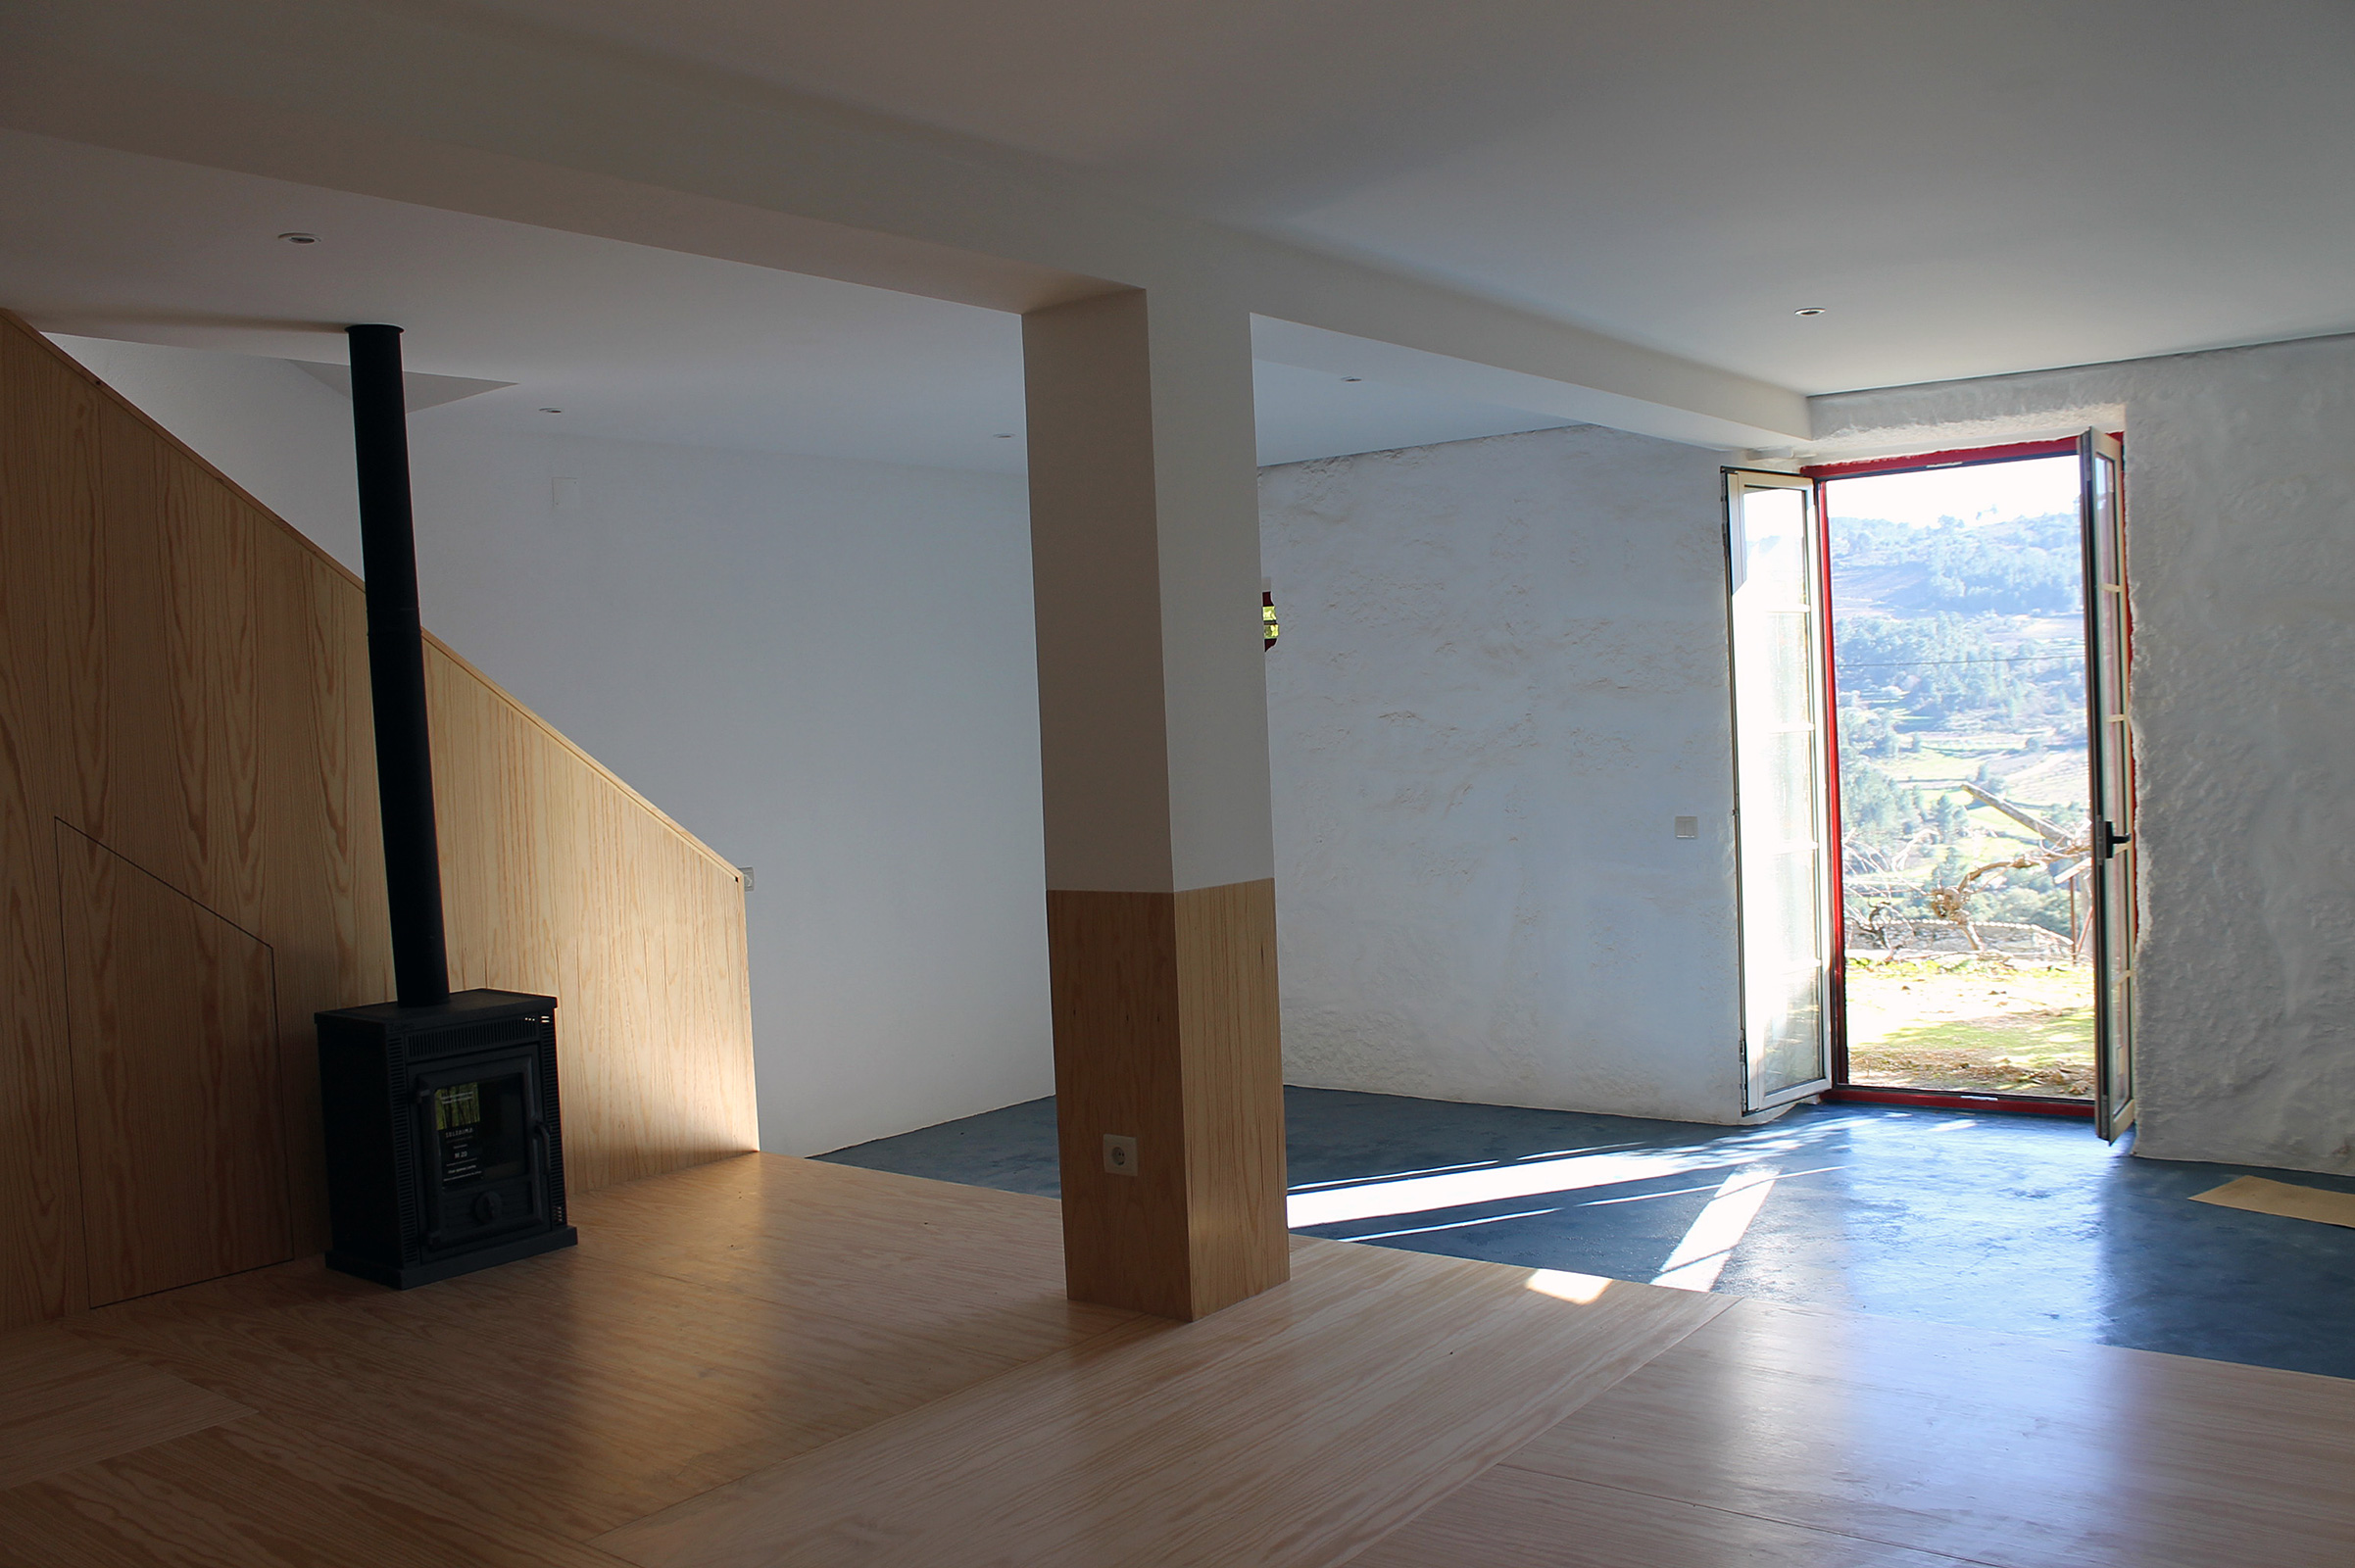 Nova sala de estar em madeira, cimento alisado e pedra à vista pintada para maior luminosidade